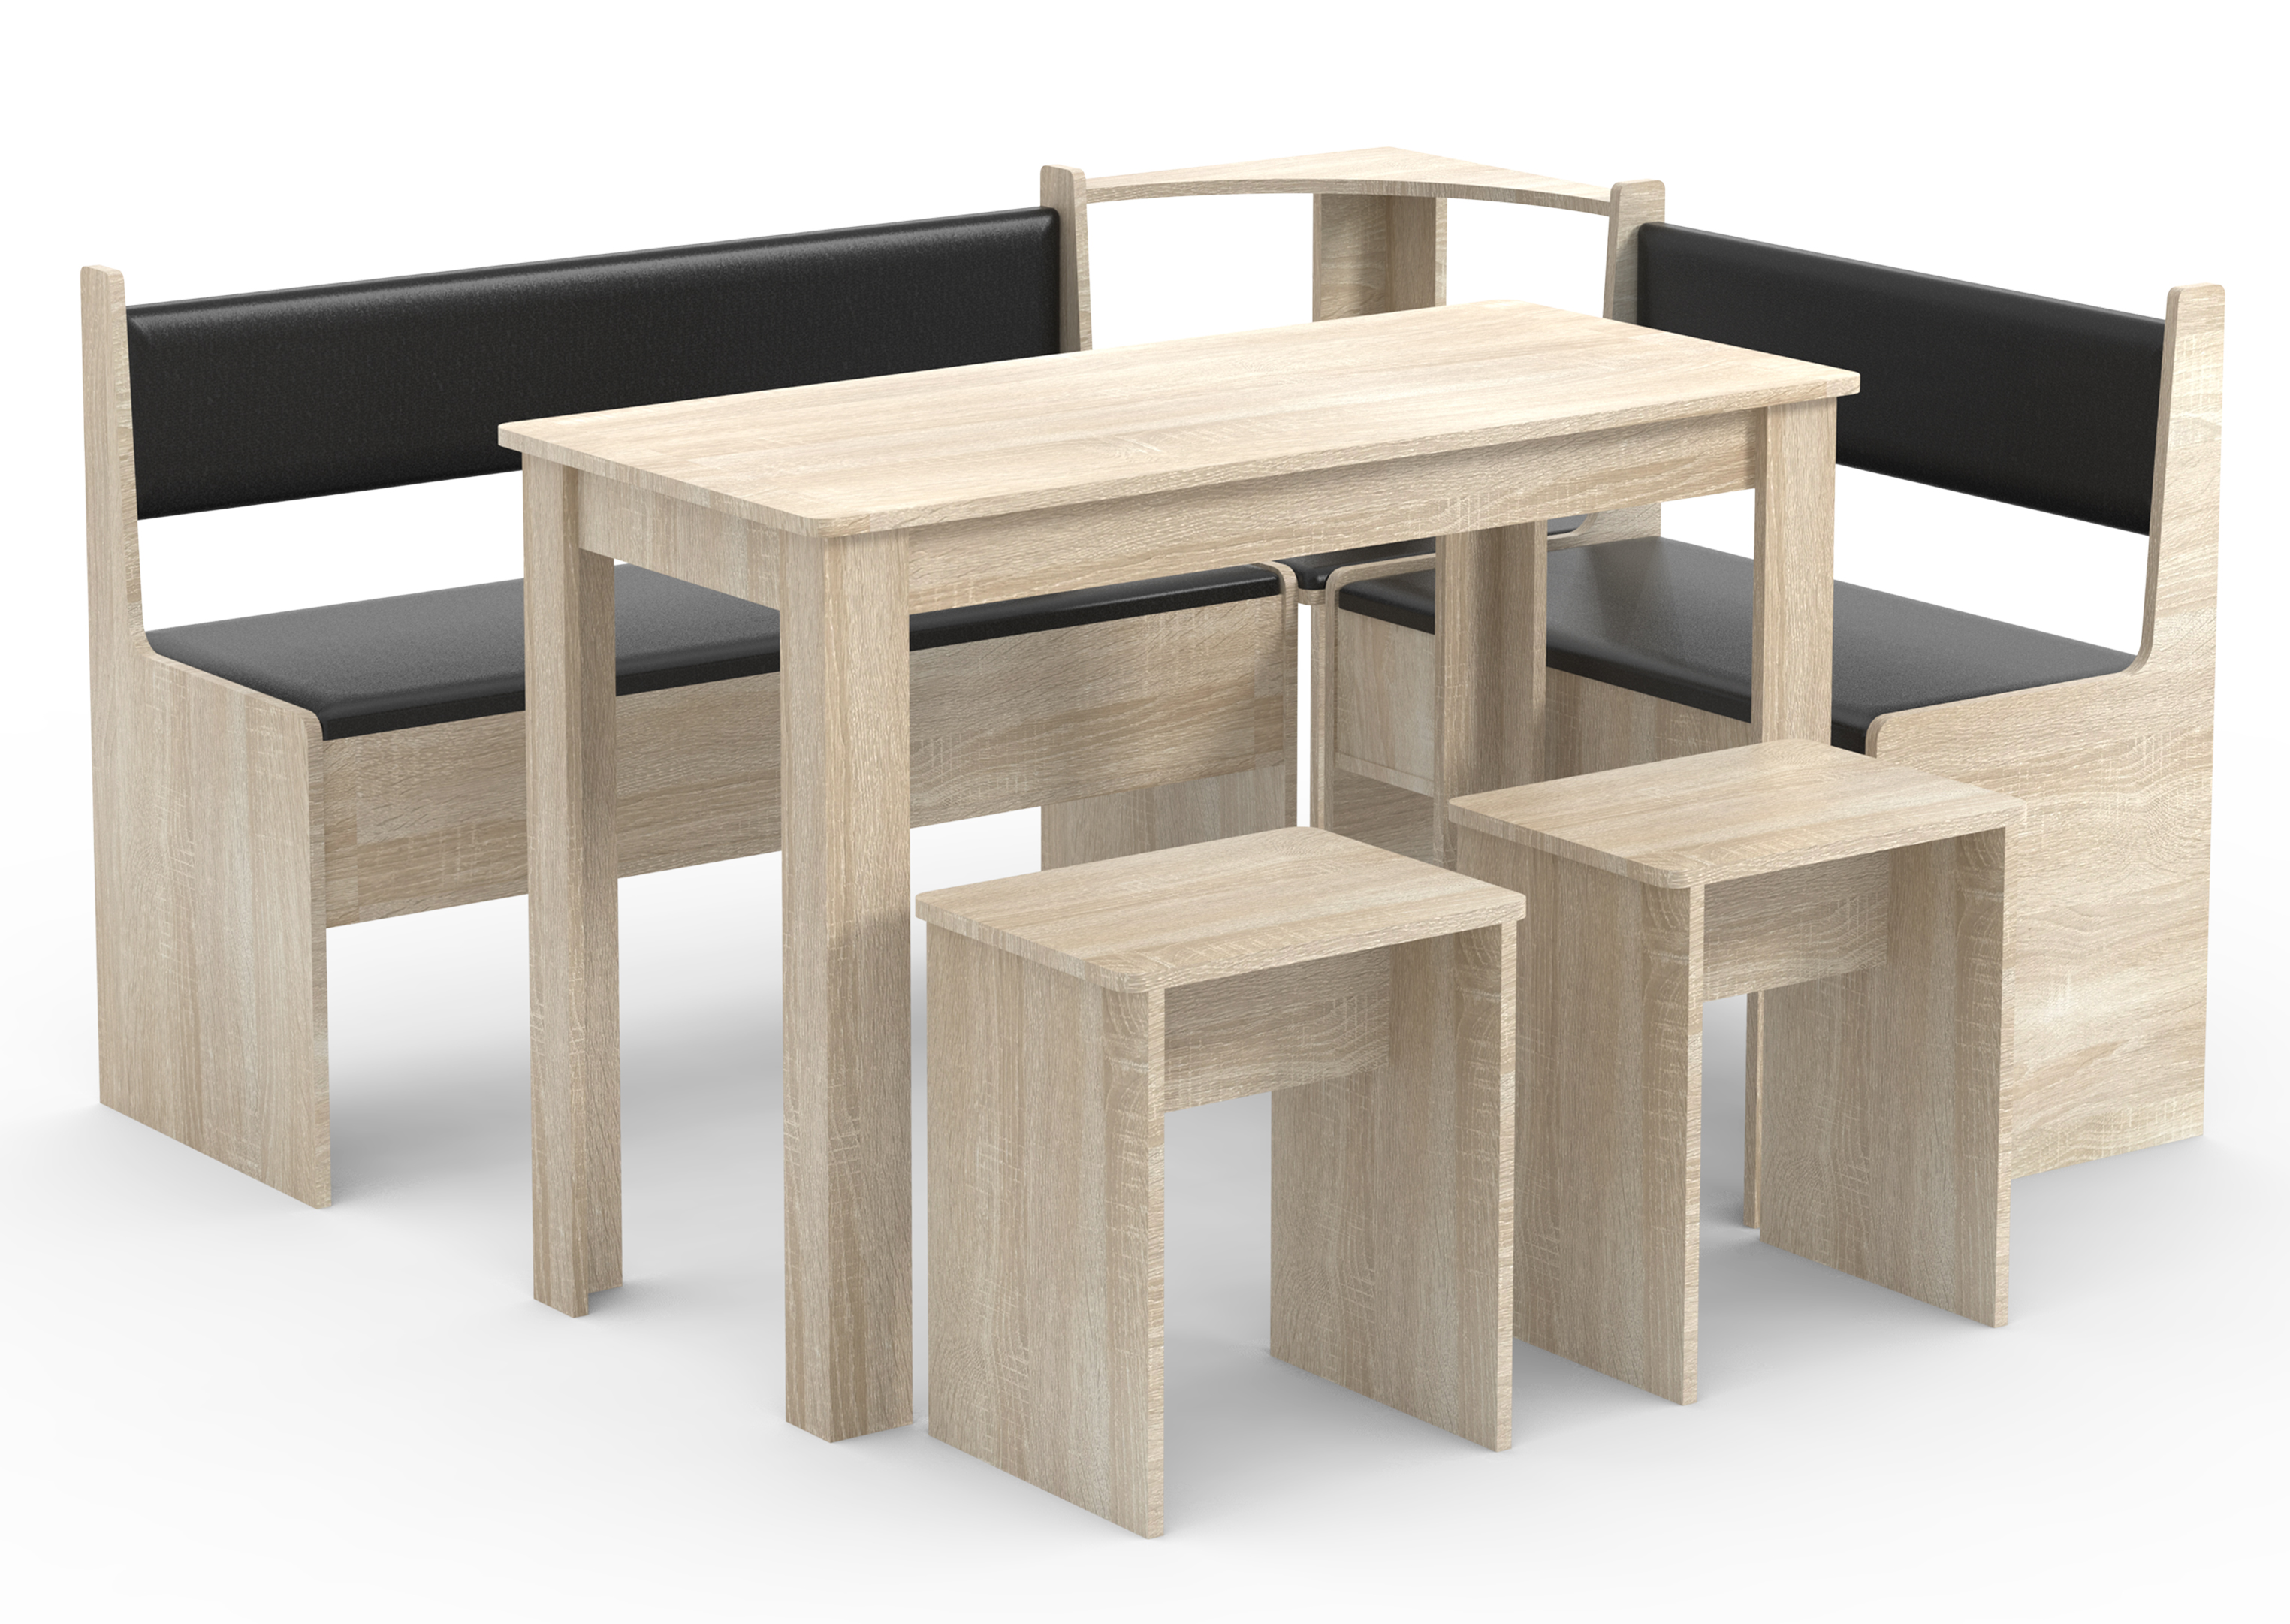 VCM NORDIC Esal Maxi hjørnebænksæt, m. 1 bord, 2 bænke, 2 taburetter - natur træ